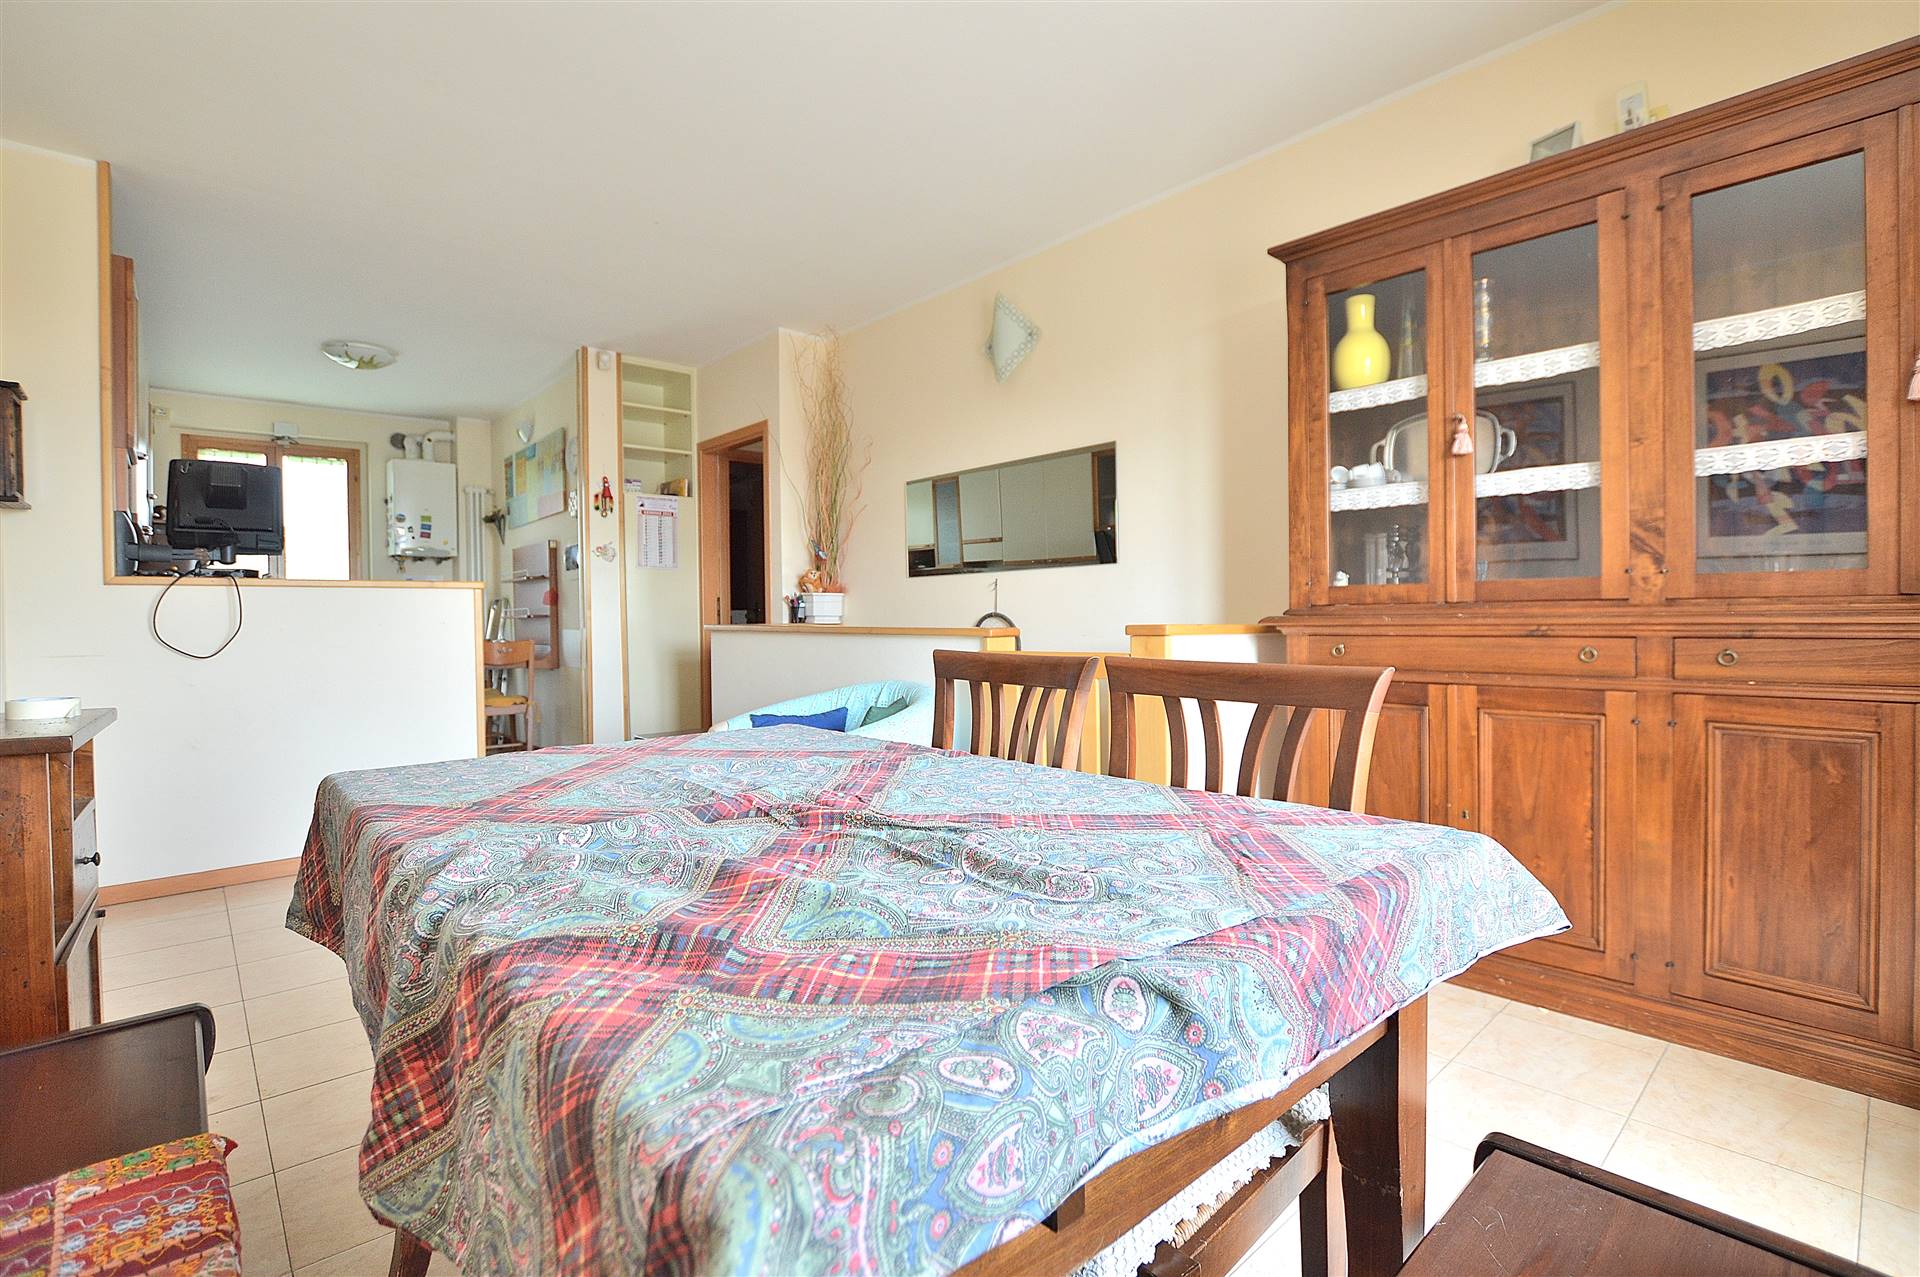 In località Casetta, in piacevole contesto residenziale, proponiamo ampio appartamento con resede posto al piano terra rialzato di una bella 